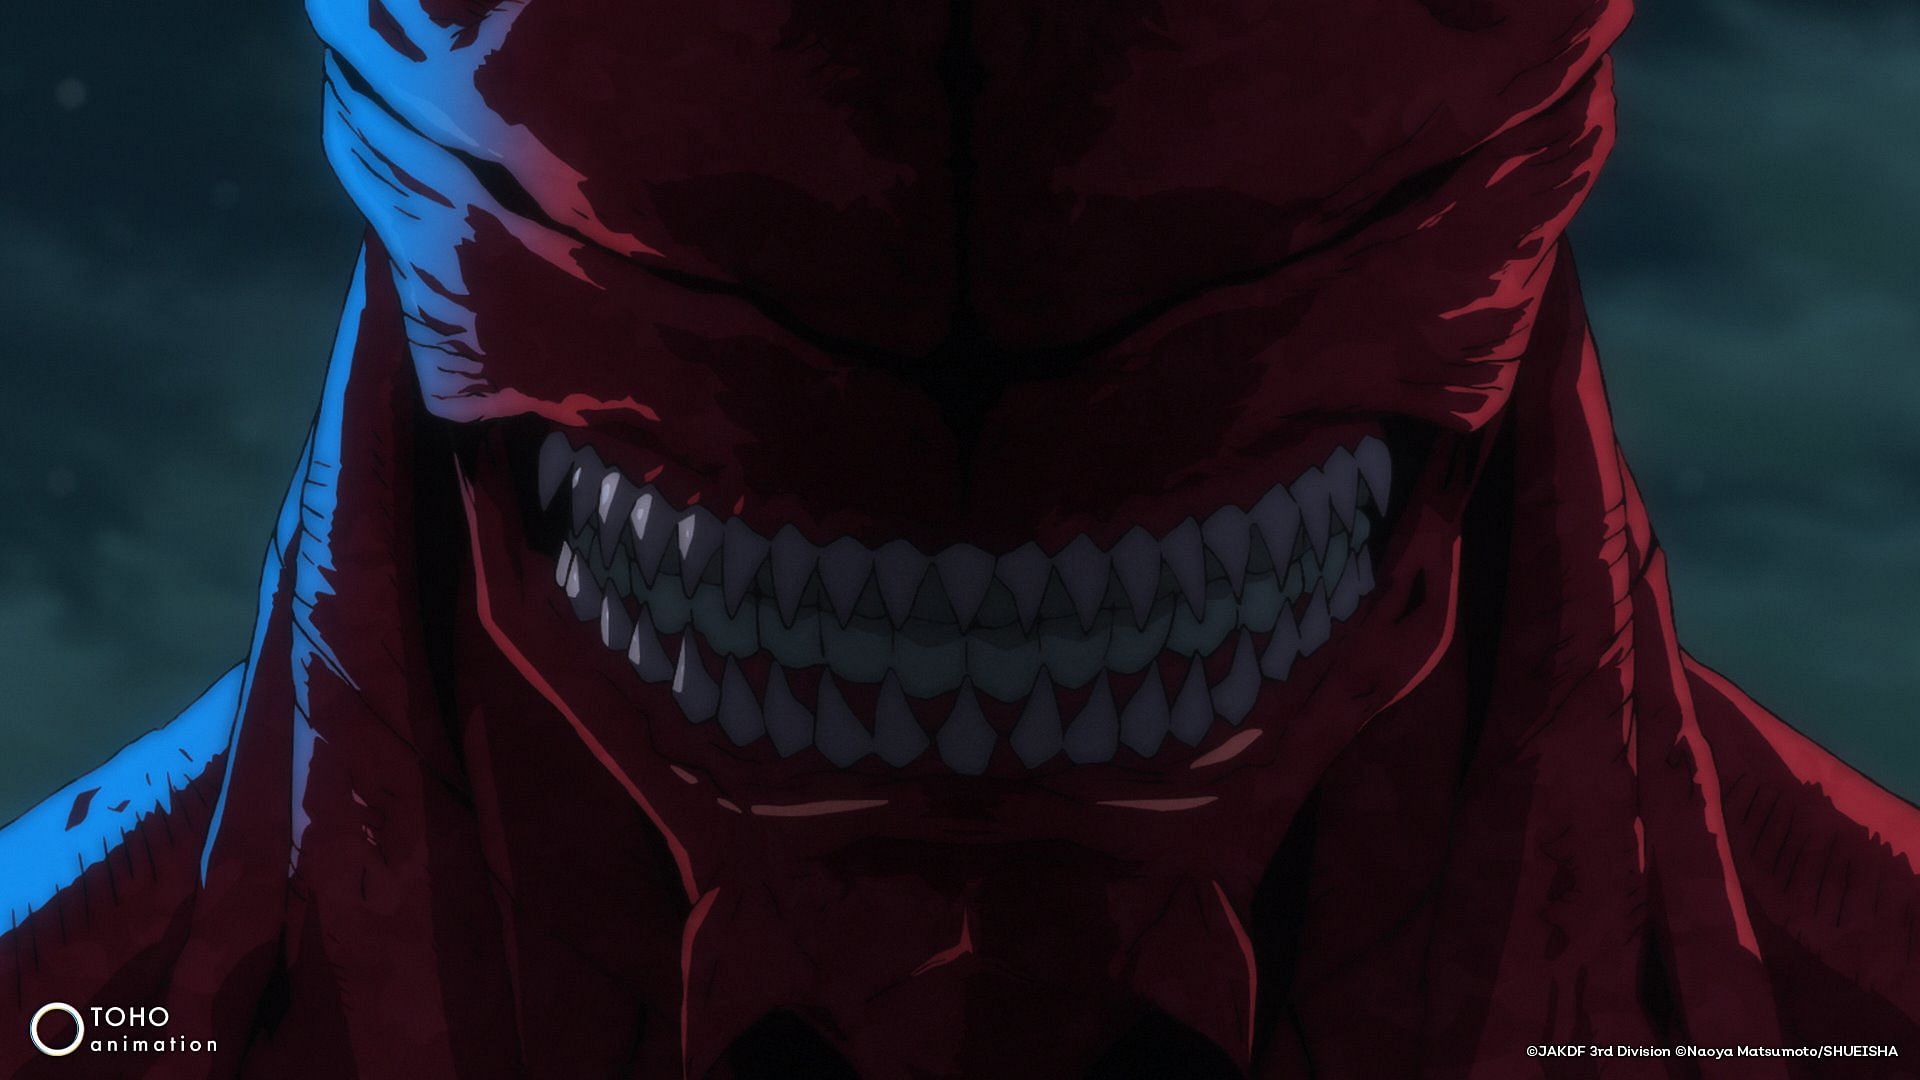 Kaiju No. 8 episode 10 sees Hoshina struggle against his Daikaiju opponent (Image via Production I.G)